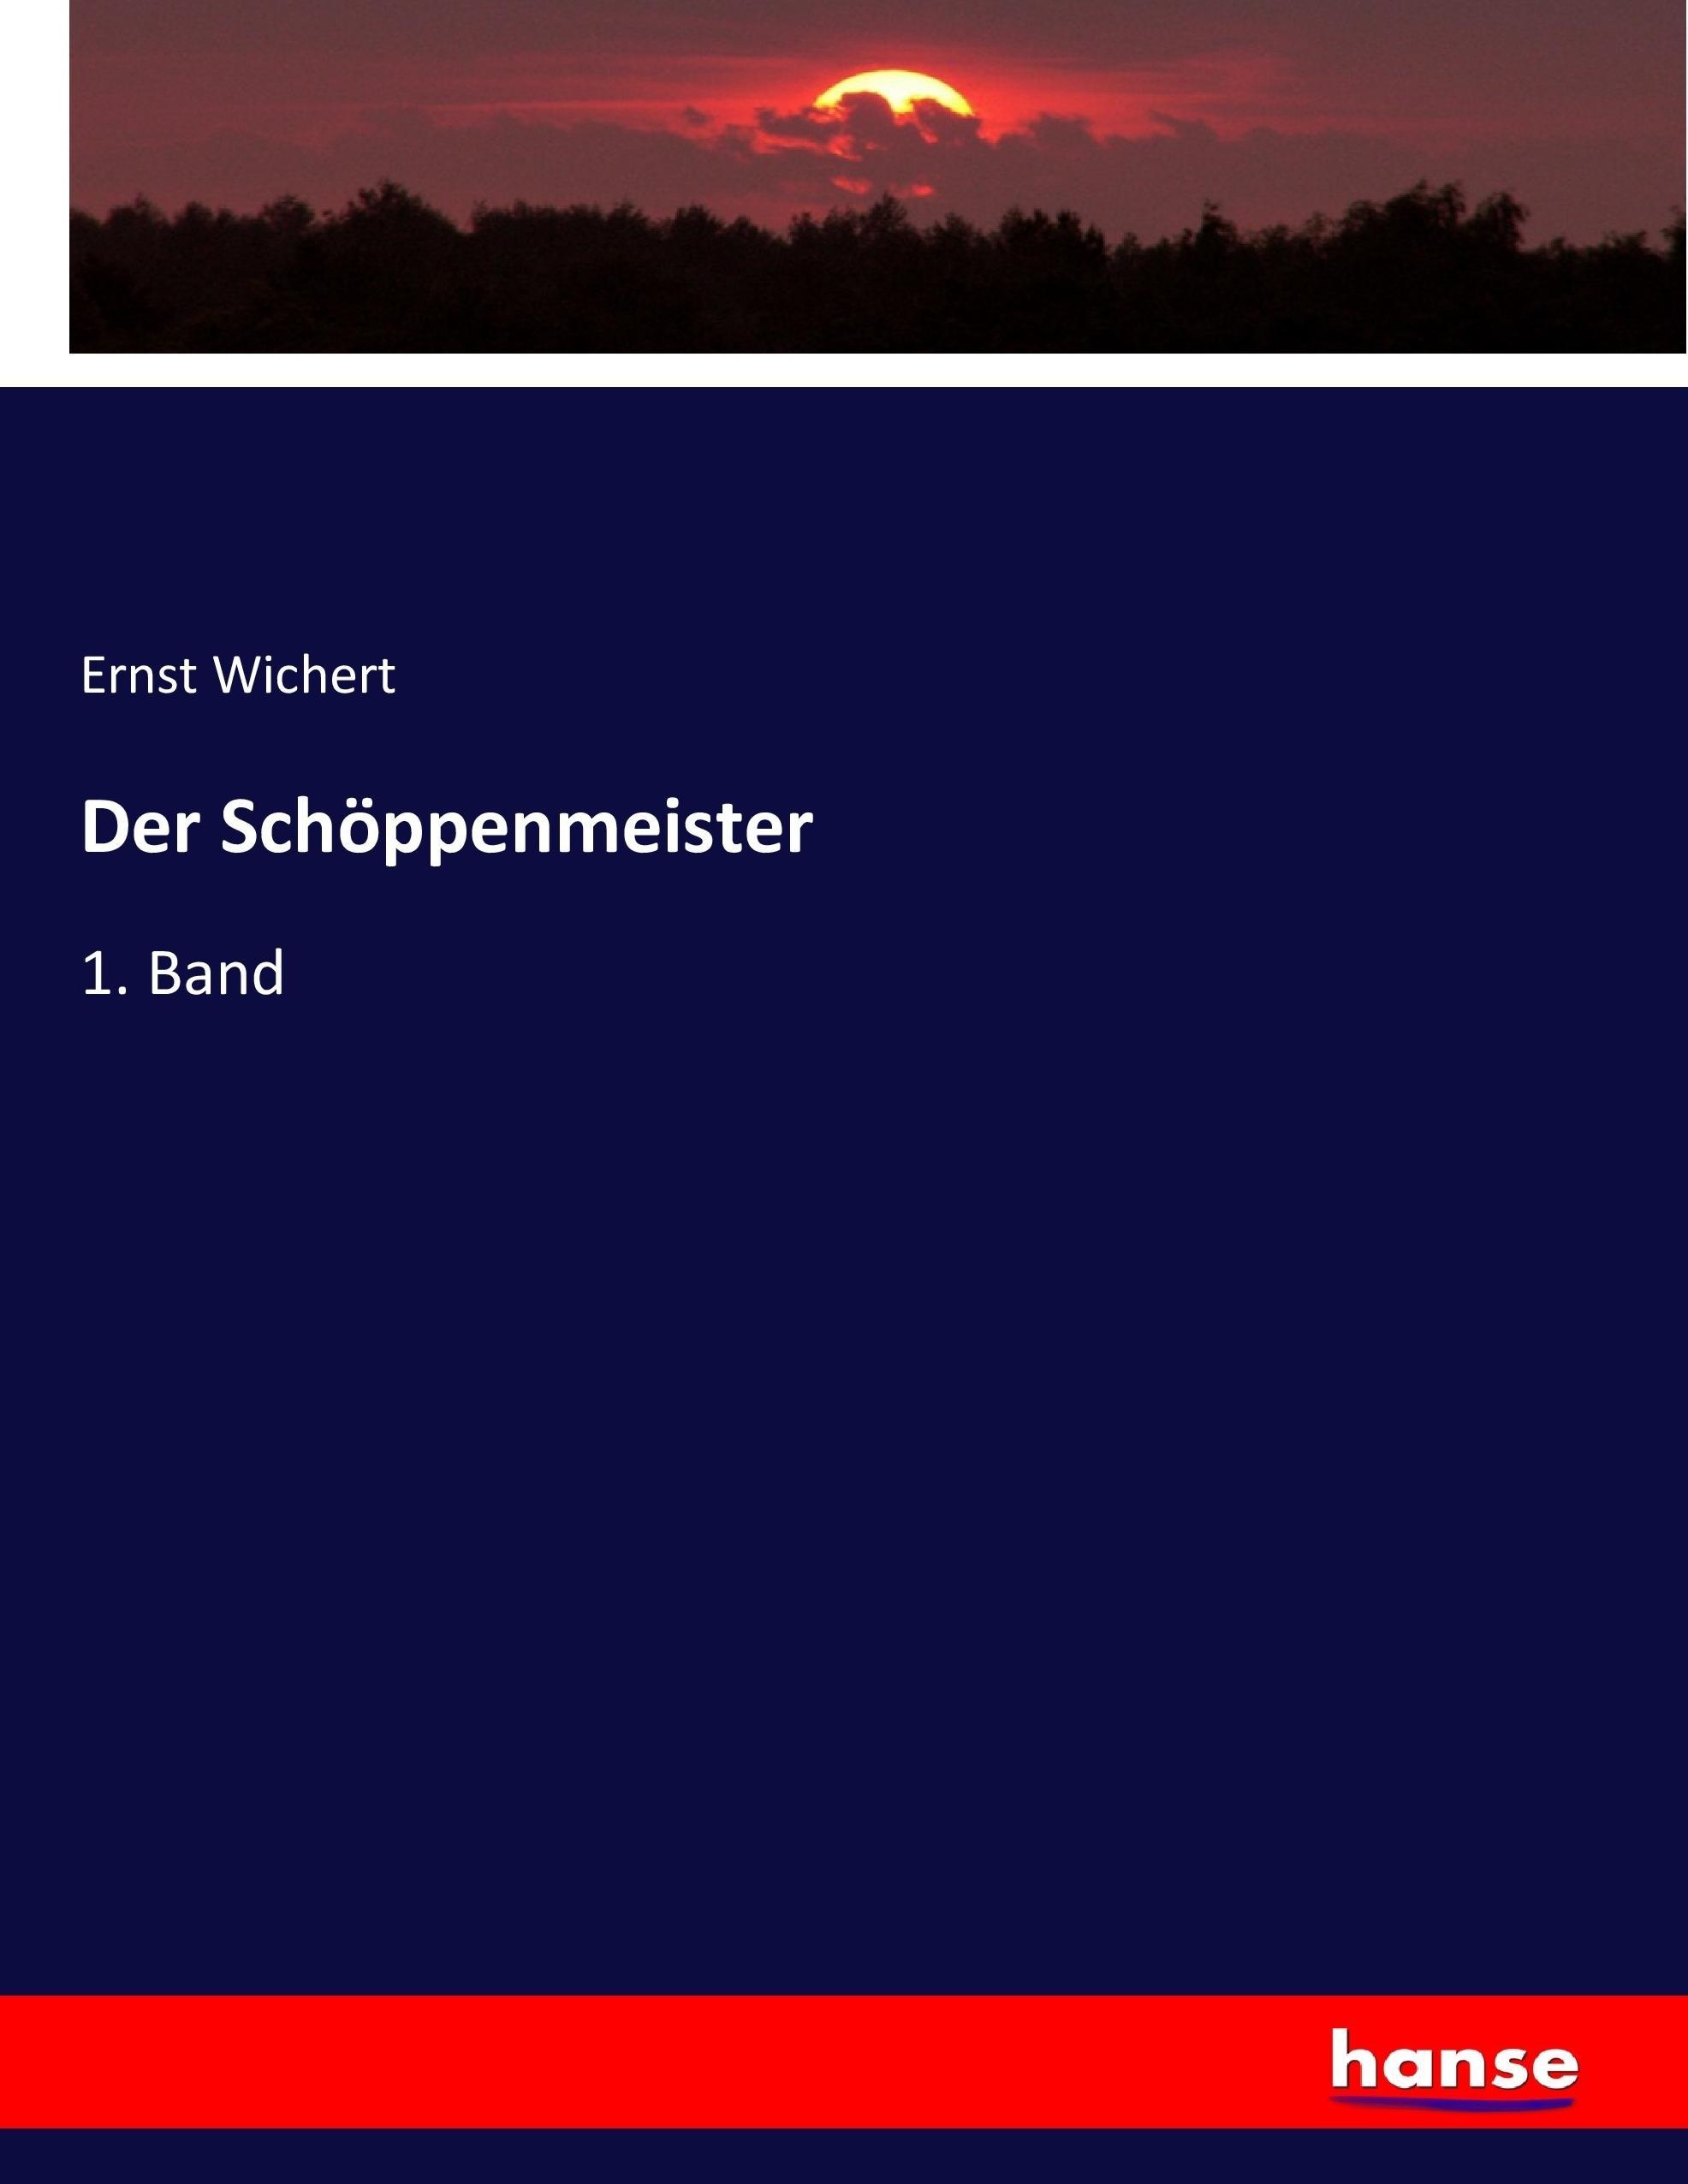 Der Schöppenmeister | 1. Band | Ernst Wichert | Taschenbuch | Paperback | 596 S. | Deutsch | 2017 | hansebooks | EAN 9783743696464 - Wichert, Ernst